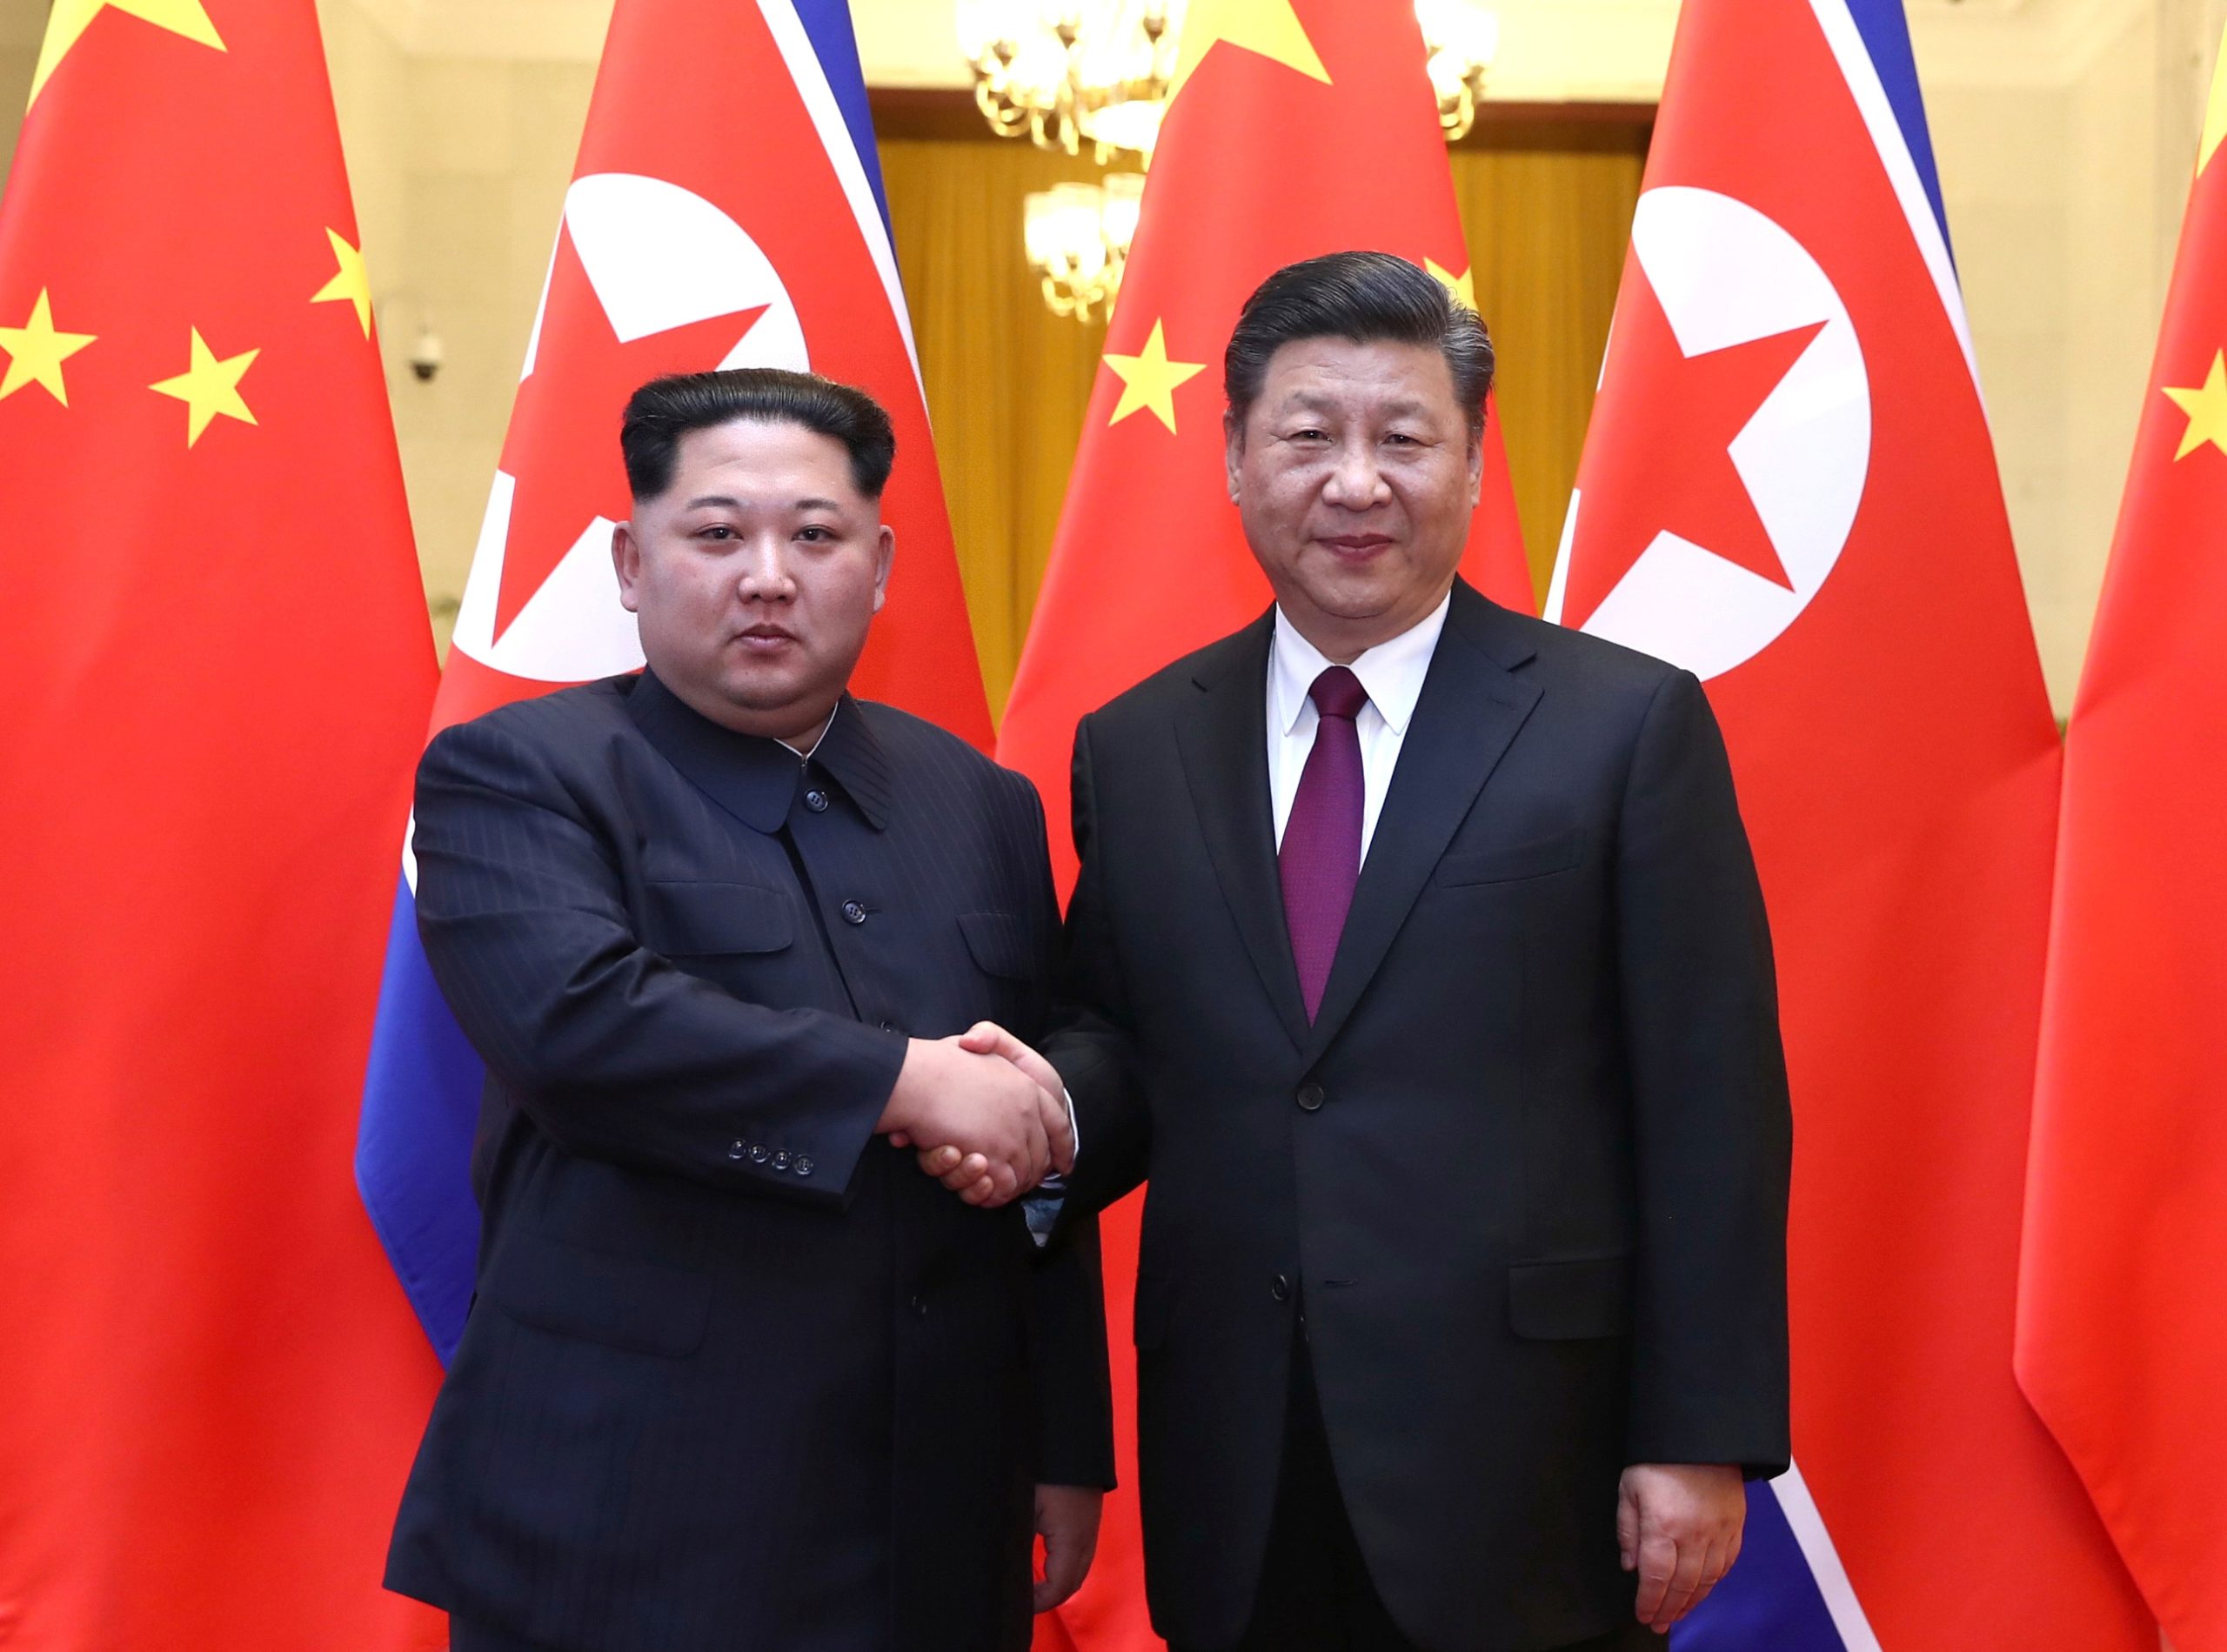 الرئيس الصيني وزعيم كوريا الشمالية